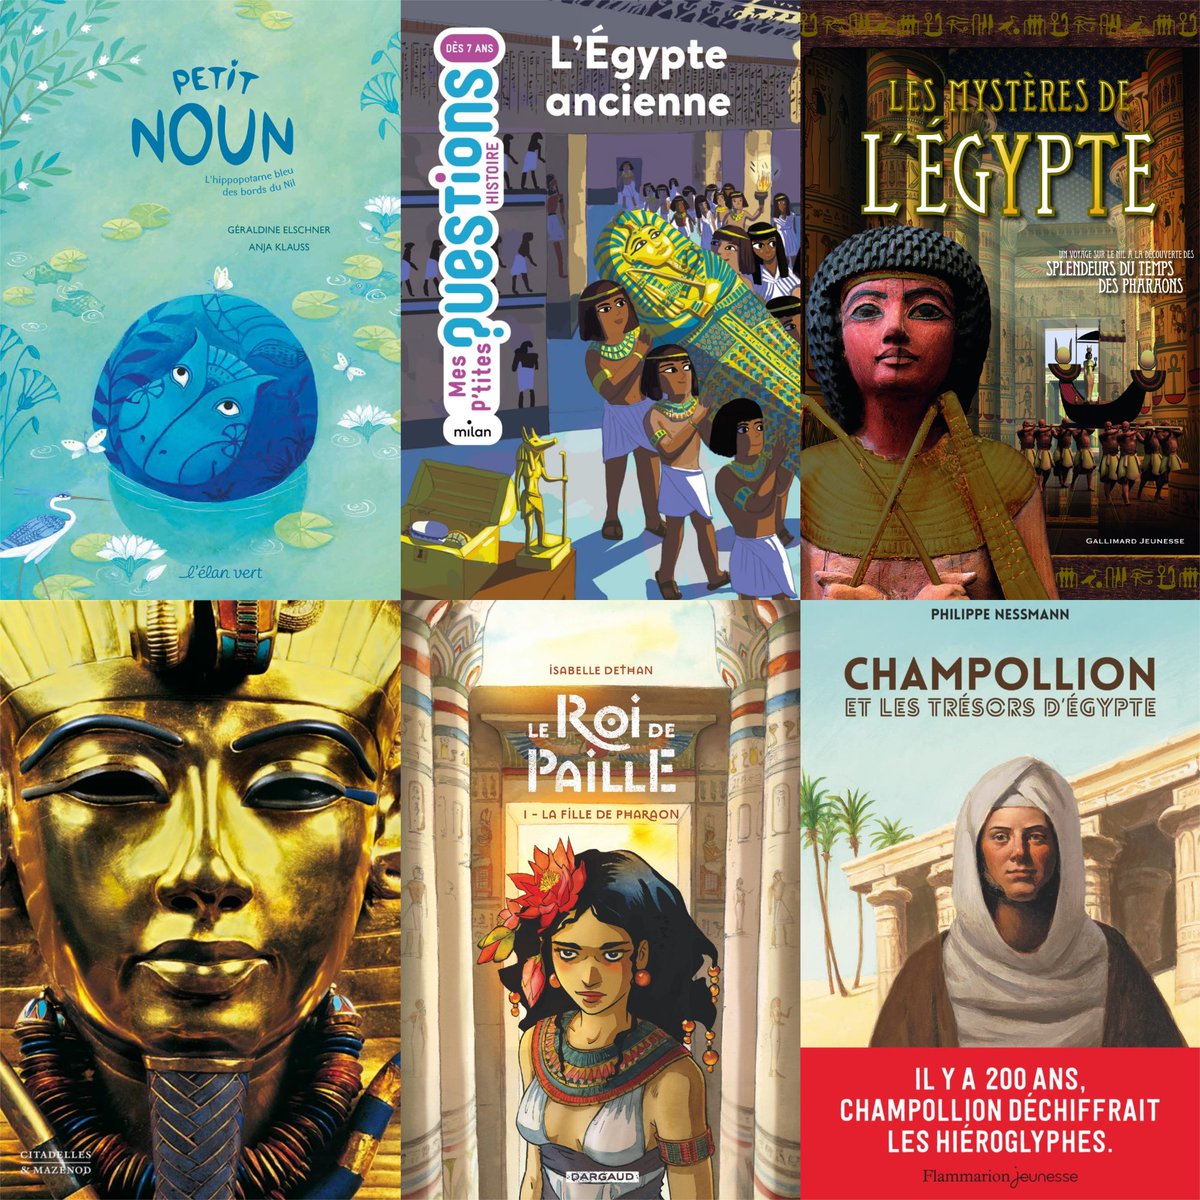 Découvrez notre sélection des meilleurs livres sur l’Égypte antique pour enfants ! 😍 🚸 🎬 🎞 📽 

Lire l'article👉urlz.fr/pWn4

#culturadvisor #culture #livres #lecture #lire #enfants #familles #éducation #apprentissage #mythologie #dieux #déesses #sélection